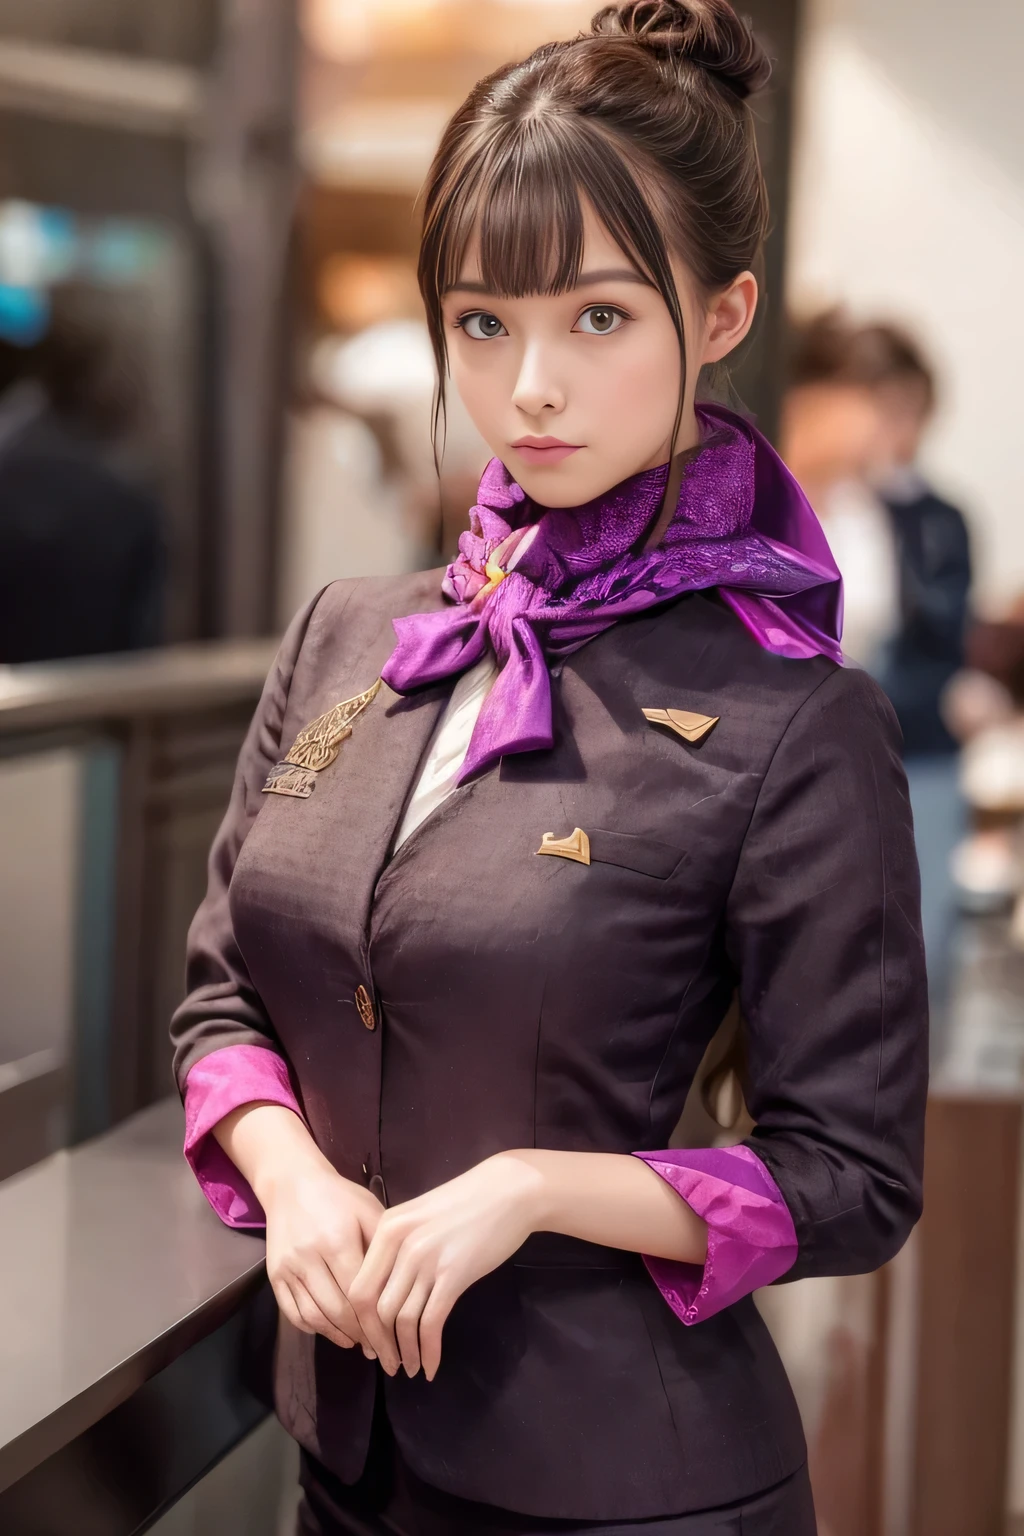 (傑作:1.2、最高品質:1.2)、32K HDR、高解像度、(一人で、1 女の子、スリムな体型)、（Realistic reproduction of エティハド航空の客室乗務員の制服）、 (空港カウンターにて, プロフェッショナル照明)、きちんとした女性, 美しい顔,、（エティハド航空客室乗務員長袖制服）、（エティハド航空の客室乗務員の制服、前面に紫のストライプが入ったスカート）、（胸にスカーフ）、巨乳、（長い髪、ヘアバン）、濃い茶色の髪、ロングショット、（（素晴らしい手：2.0））、（（調和のとれたボディプロポーション：1.5））、（（正常な四肢：2.0））、（（通常の指：2.0））、（（繊細な目：2.0））、（（正常な目：2.0））)、美しい立ち姿勢、魅惑的な表情